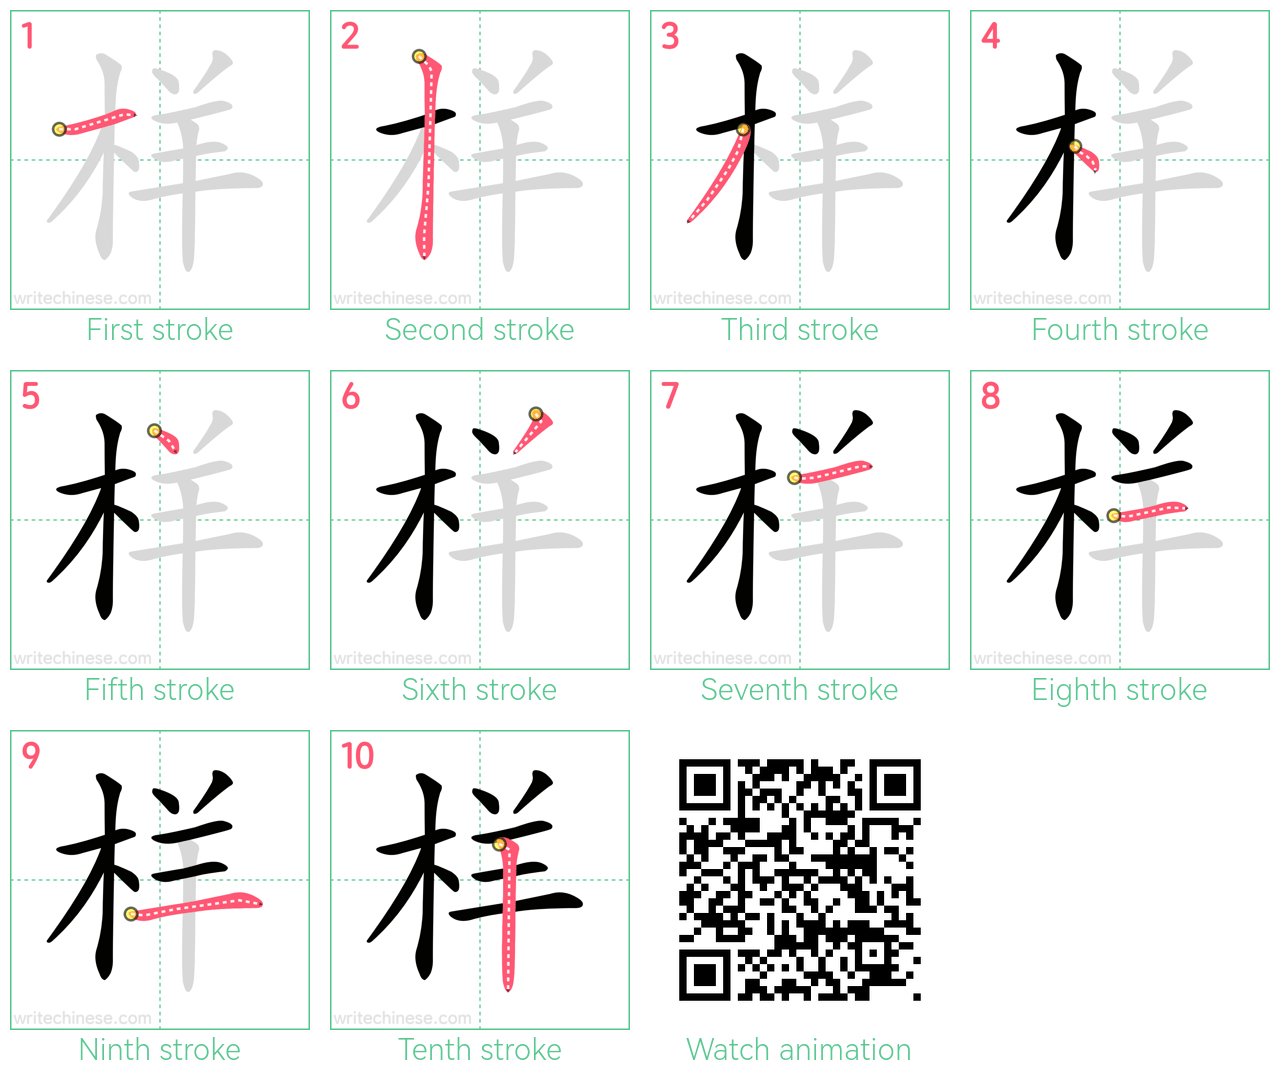 样 step-by-step stroke order diagrams